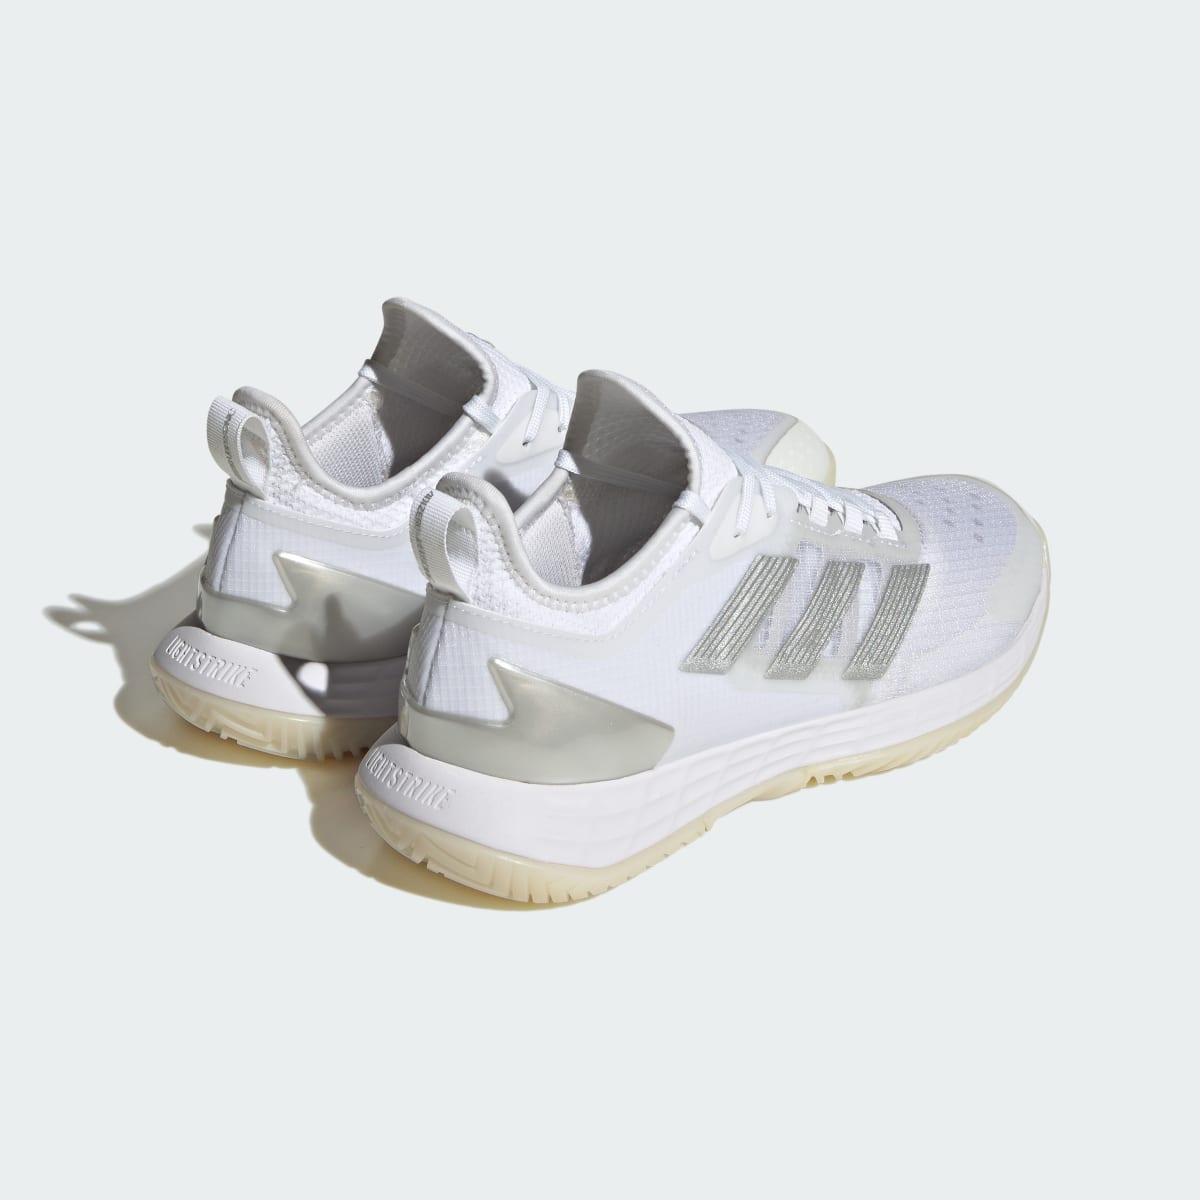 Adidas Adizero Ubersonic 4.1 Tennis Shoes. 6